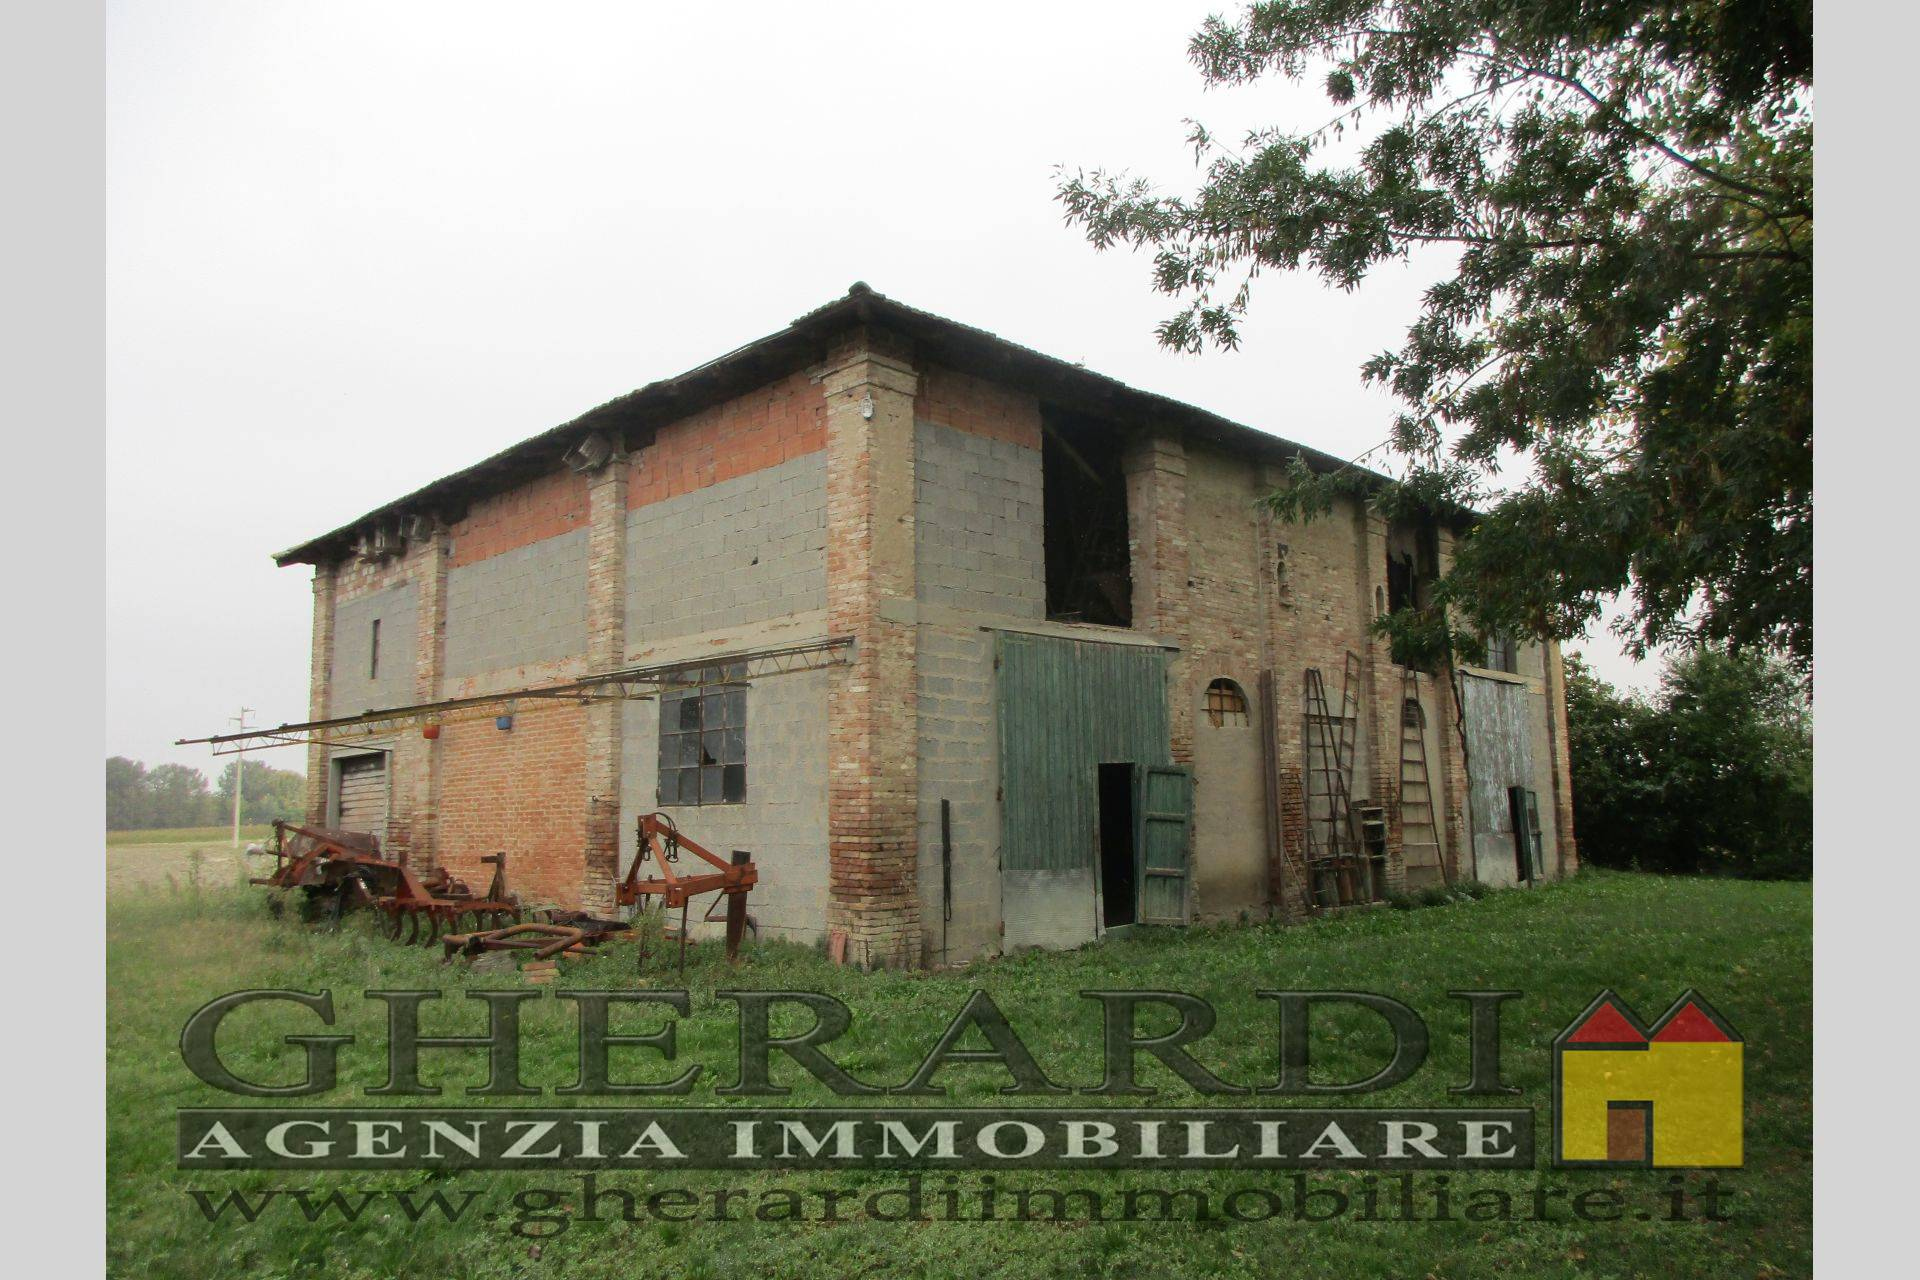 Rustico / Casale in vendita a Ferrara, 9999 locali, zona Località: SanBartolomeoinBosco, prezzo € 48.000 | PortaleAgenzieImmobiliari.it